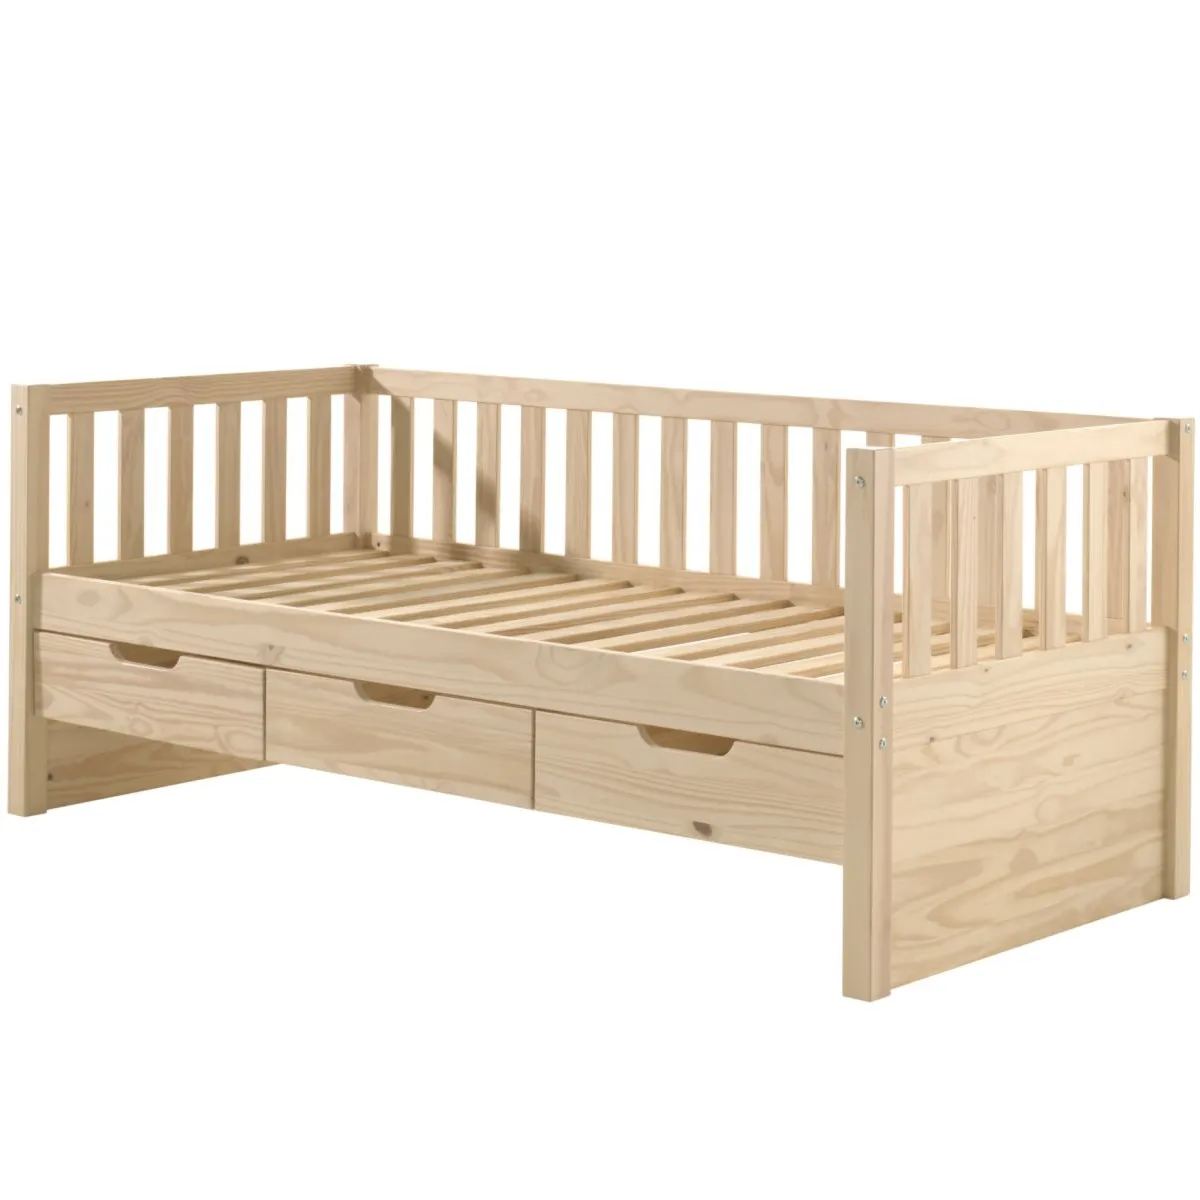 Armazenamento simples cama com 3 gavetas quarto móveis cama de madeira